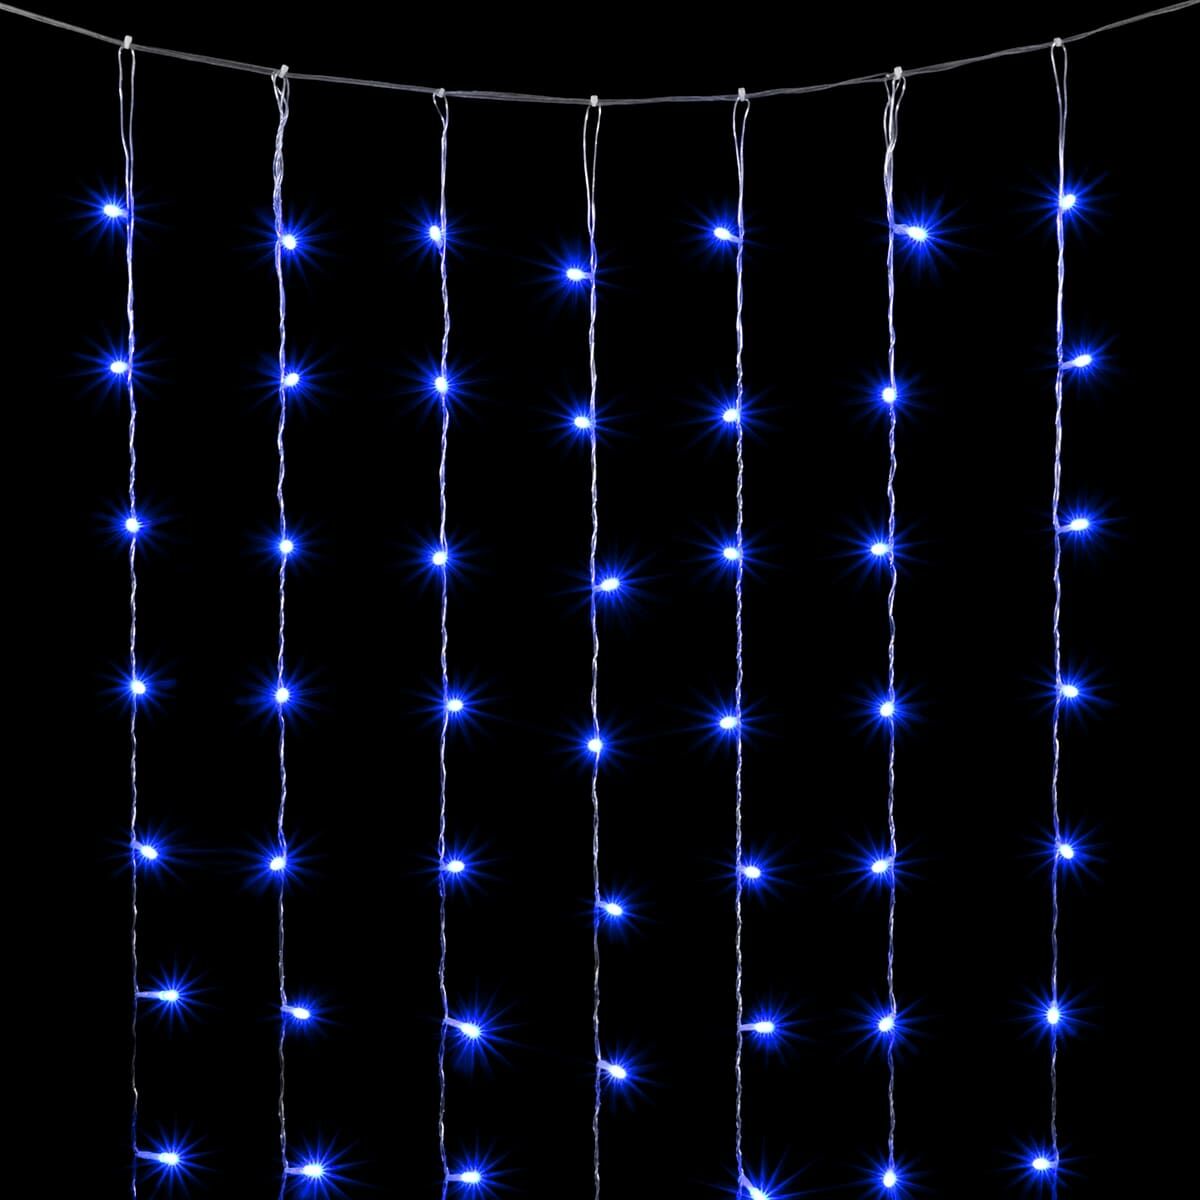 01-161 Гирлянда Занавес 2 x 2 м Синий, 400 LED, Провод Прозрачный ПВХ, IP20